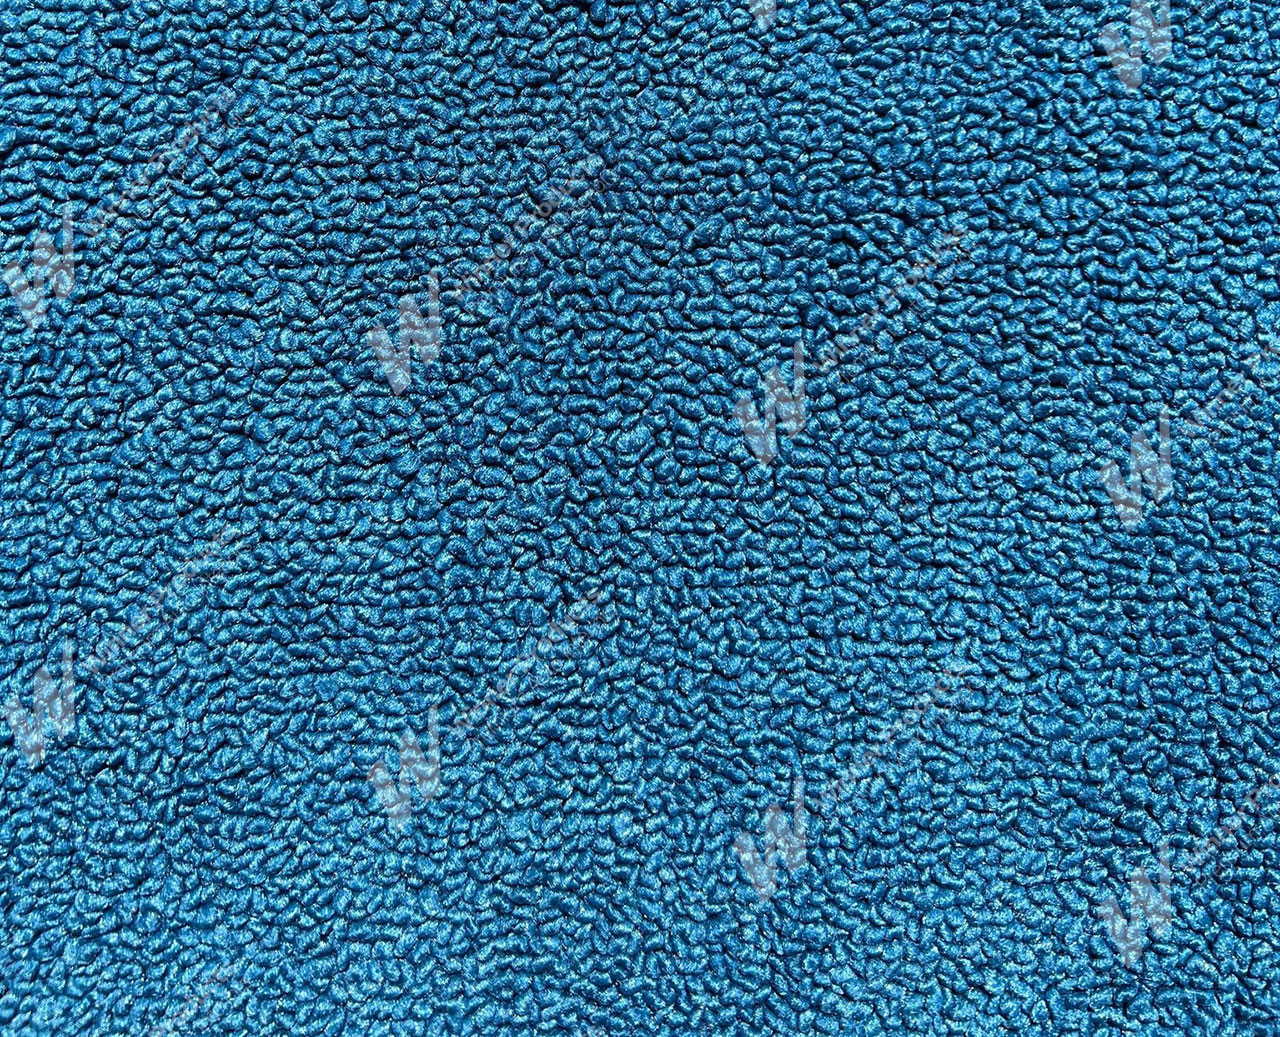 Holden Standard HR Standard Ute E79 Dover Blue Carpet (Image 1 of 1)